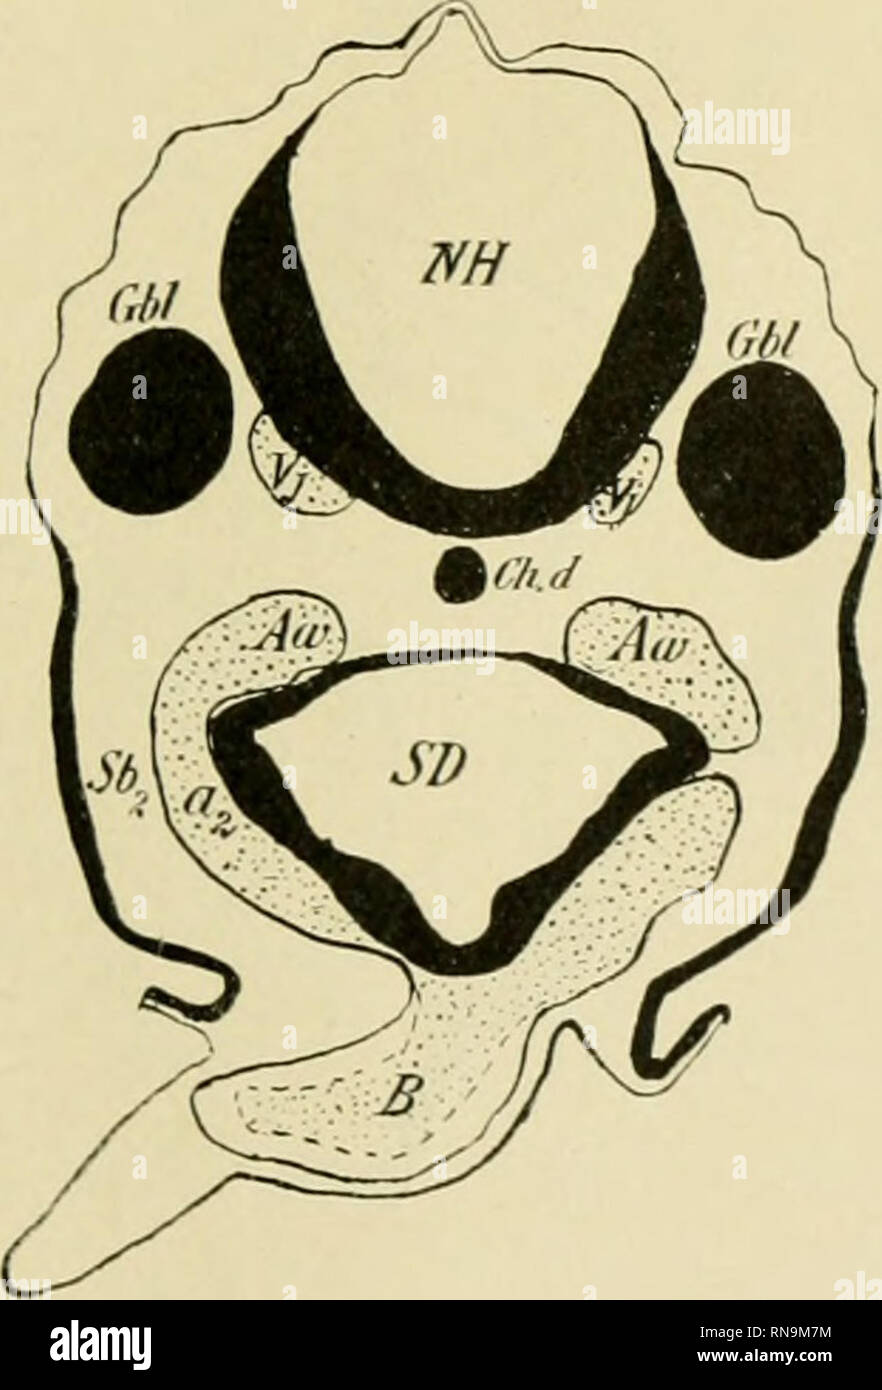 . Anatomische Hefte. Fig. 3. Längsschnitt durch einen Hühnerembryo von 7,4 mm g. L. (II. Periode). KD Kopfdarm, a Ausstülpung des Darmbodens (Grenze zwischen Kopfdarm und Schlunddarm). SD Schlunddarm. Mv Rachenmembran. Thyr Schilddrüse. Sbt 1. Schlundbogen. B Bulbus.. Fig. 4. Hühnerembryo von 7,4 mm g. L. (II. Periode). Querschnitt durch den 2. Aorten- bogen. NH Nachhirn. Gbl Gehörbläschen. Ch. d Chorda dorsalis. Sb&gt; Schlund- bogen. SD Schlunddarm. a2 2. Aortenbogen. Aw Aortenwurzel. B Bulbus (vorderstes Ende desselben). Vj Vena jugularis. Bis zur Mille des dritten Tages steril die Achse de Stock Photo